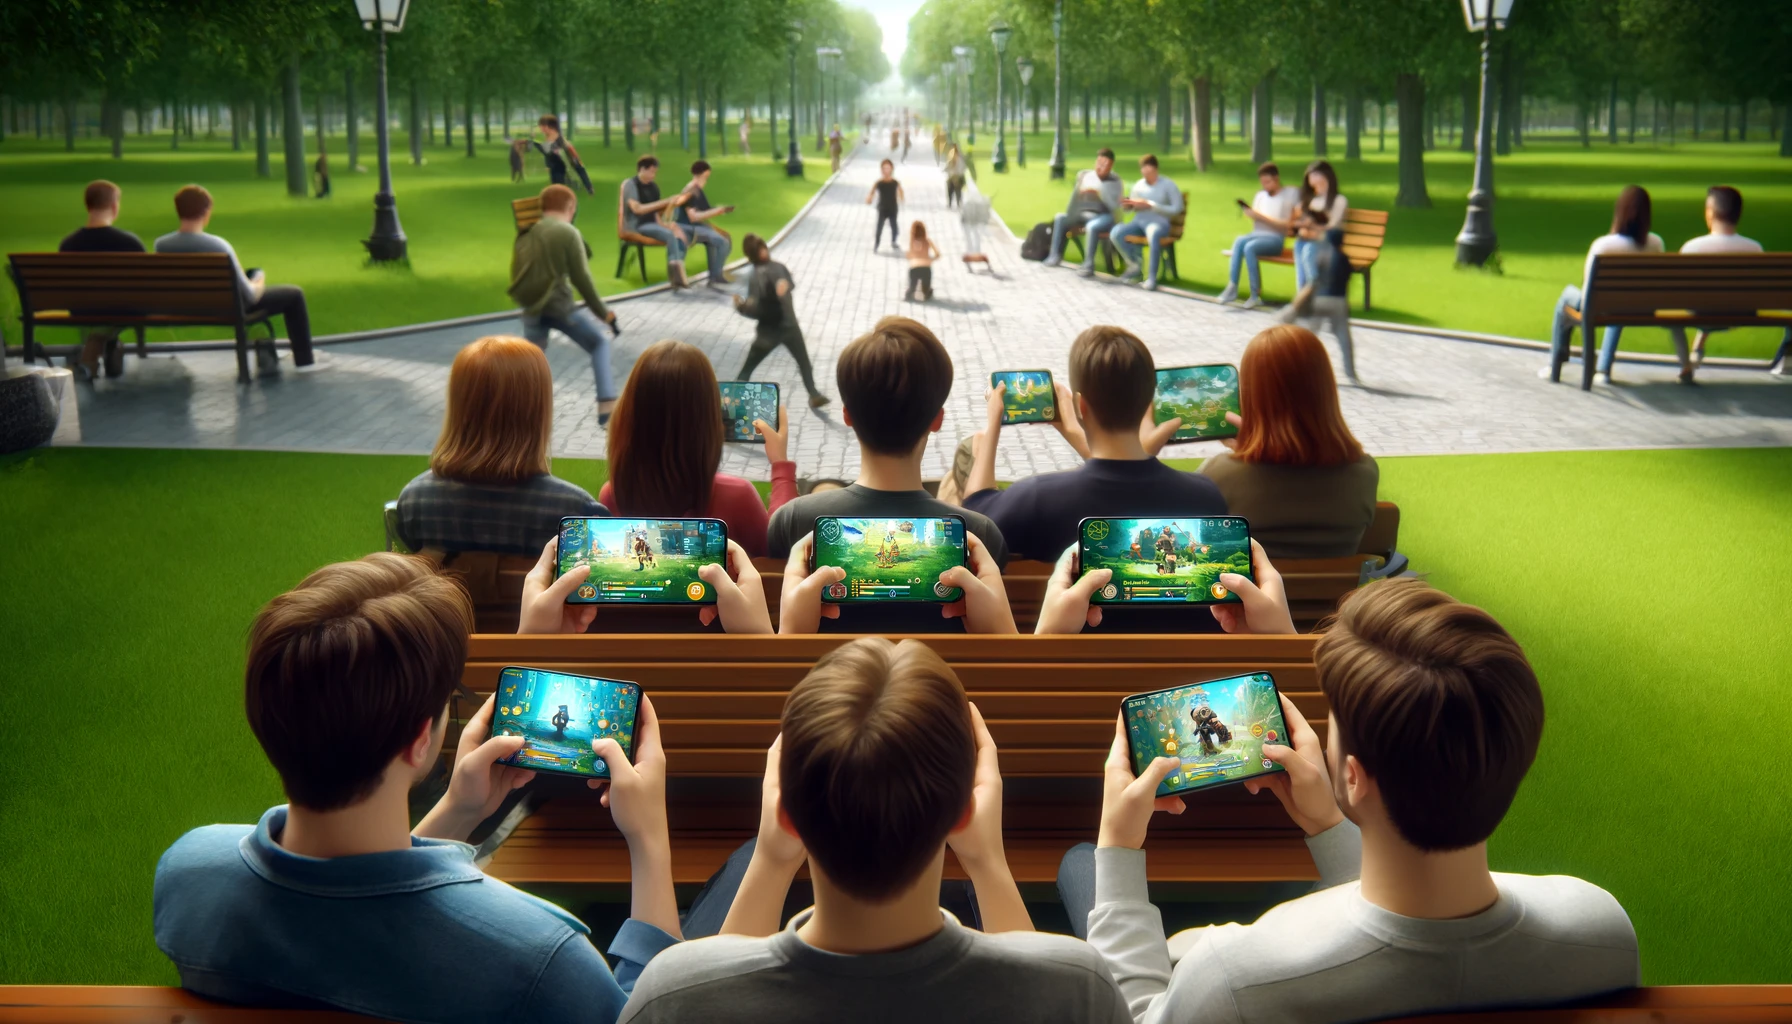 Juegos para móviles: ¿El futuro de los deportes electrónicos?